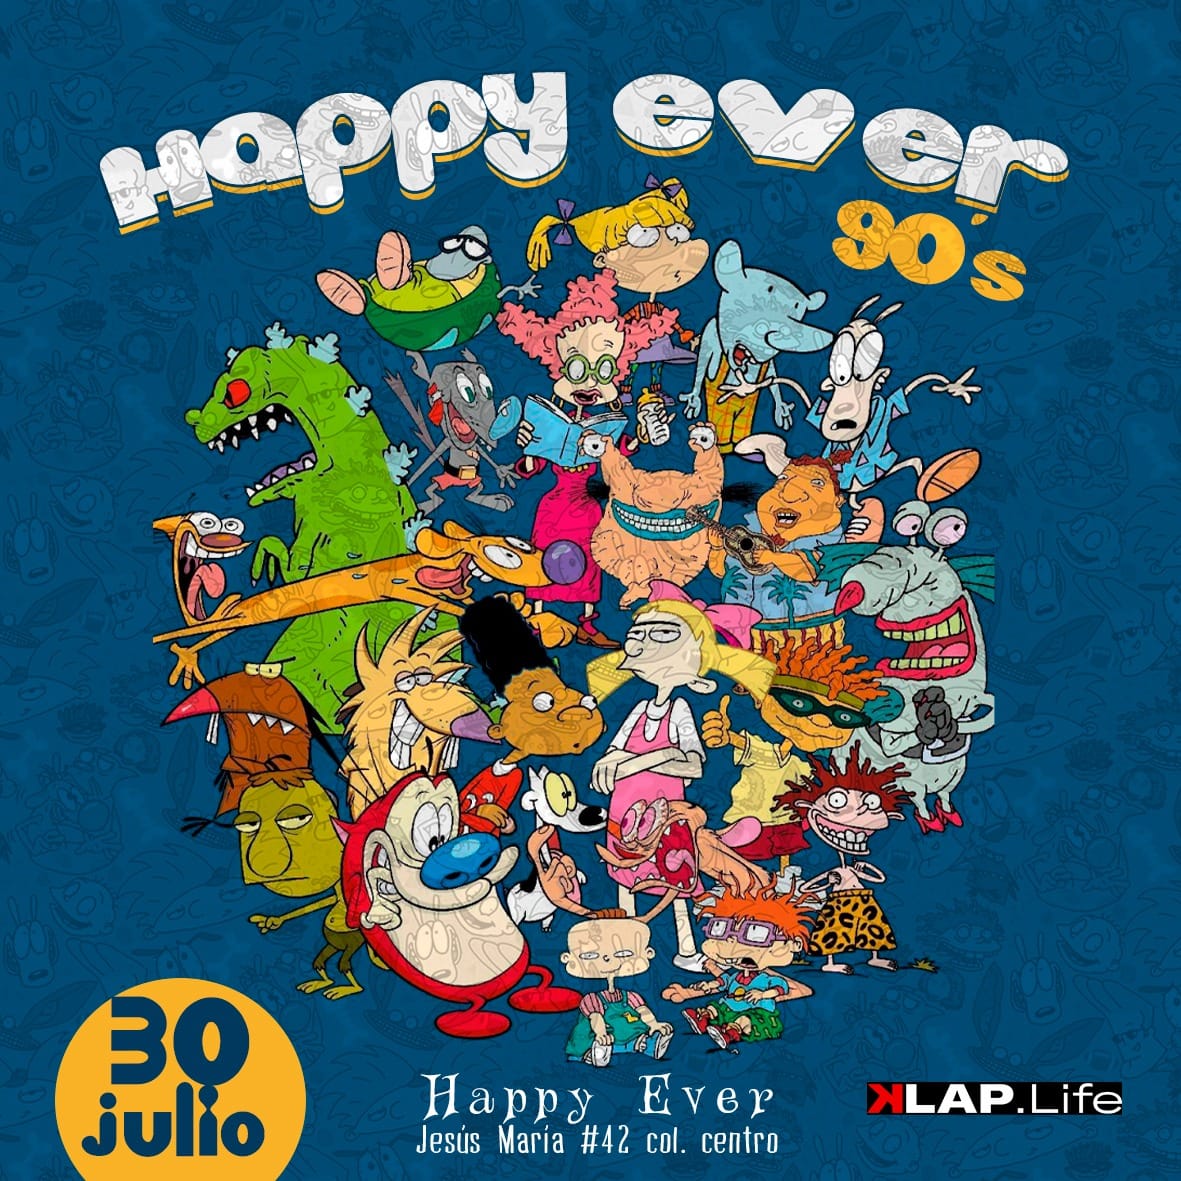 Happy ever 90